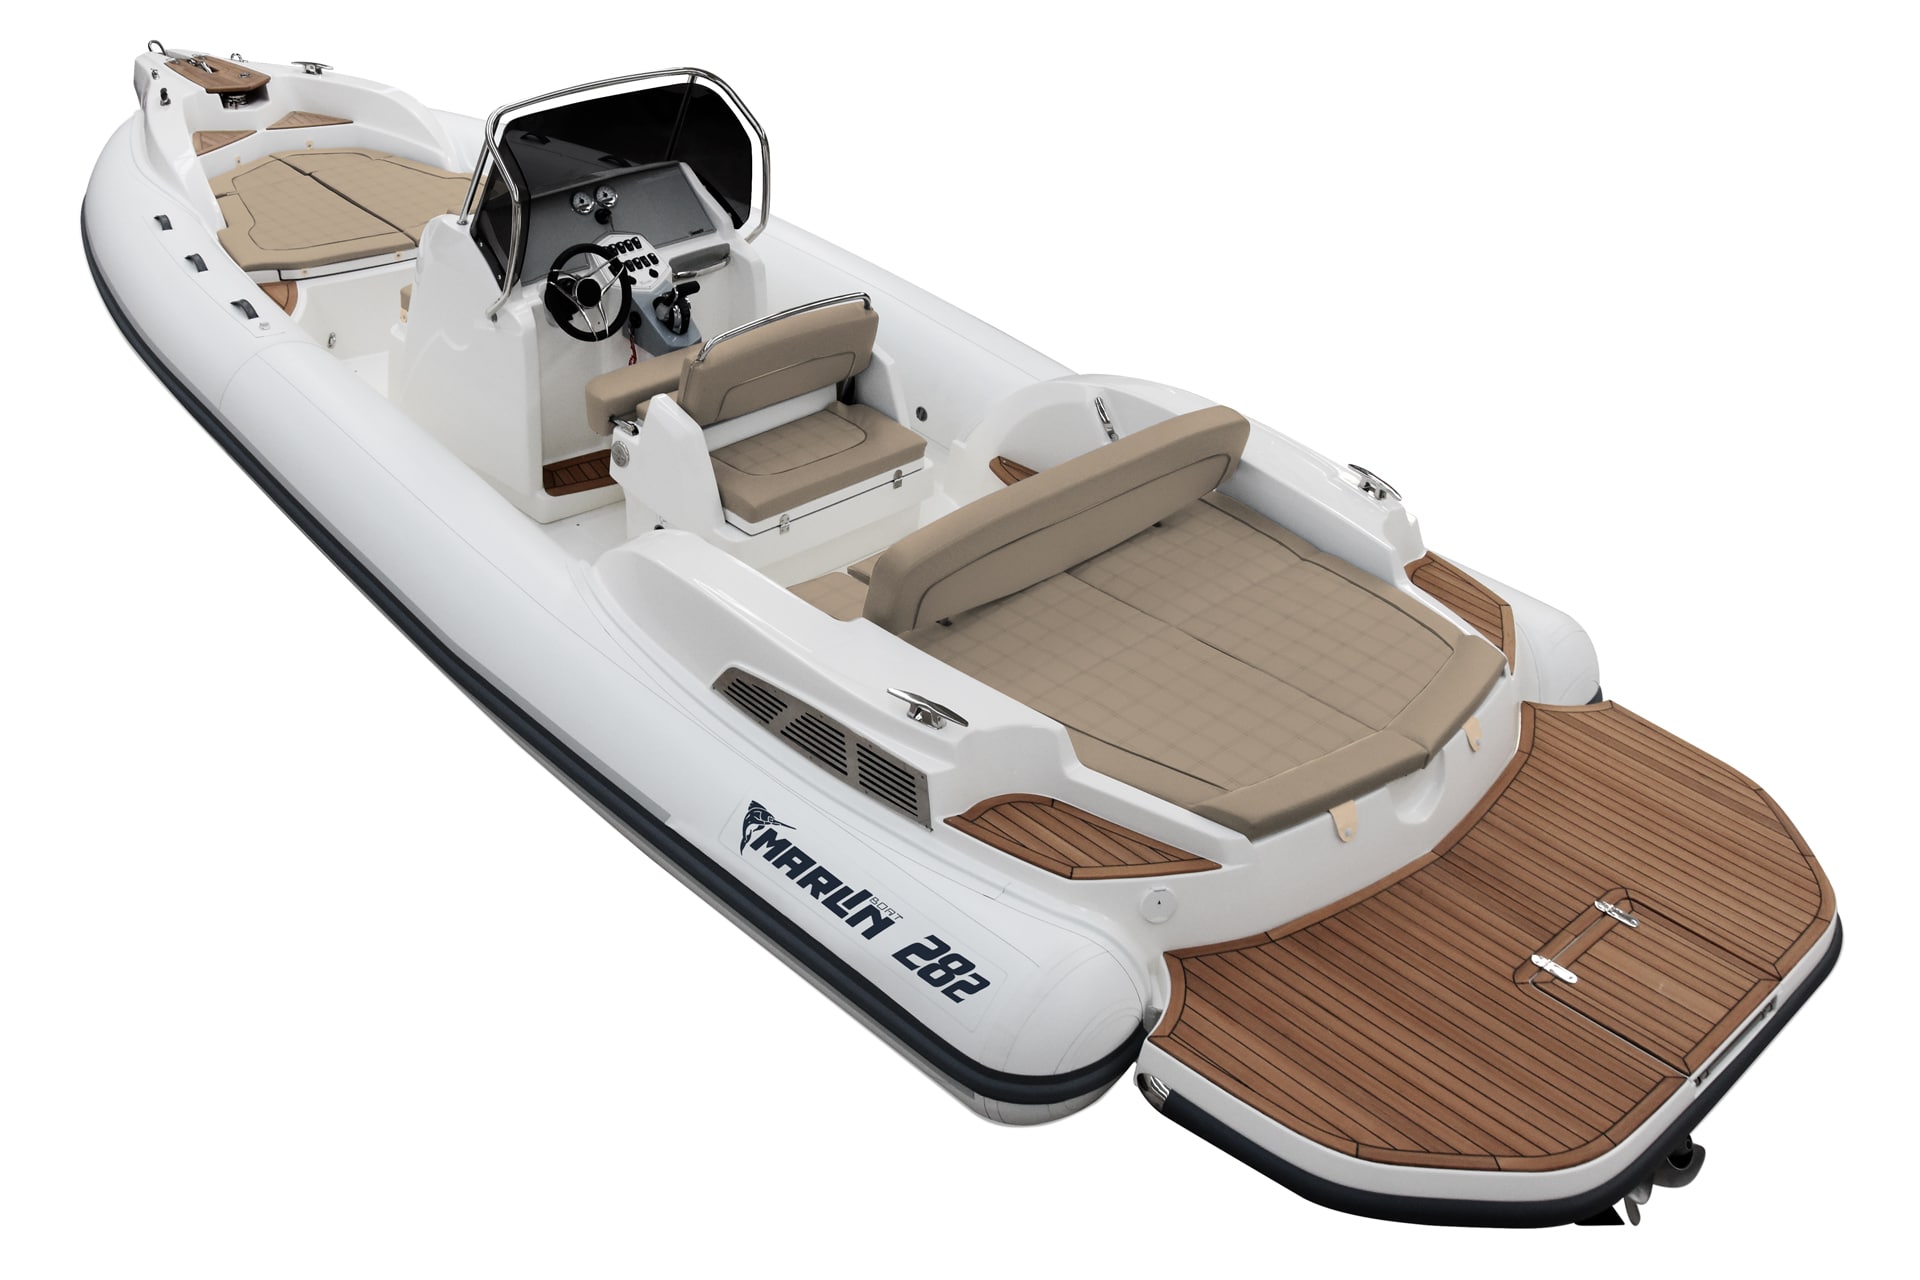 Marlin Boat - Gommone Fuoribordo Modello 282